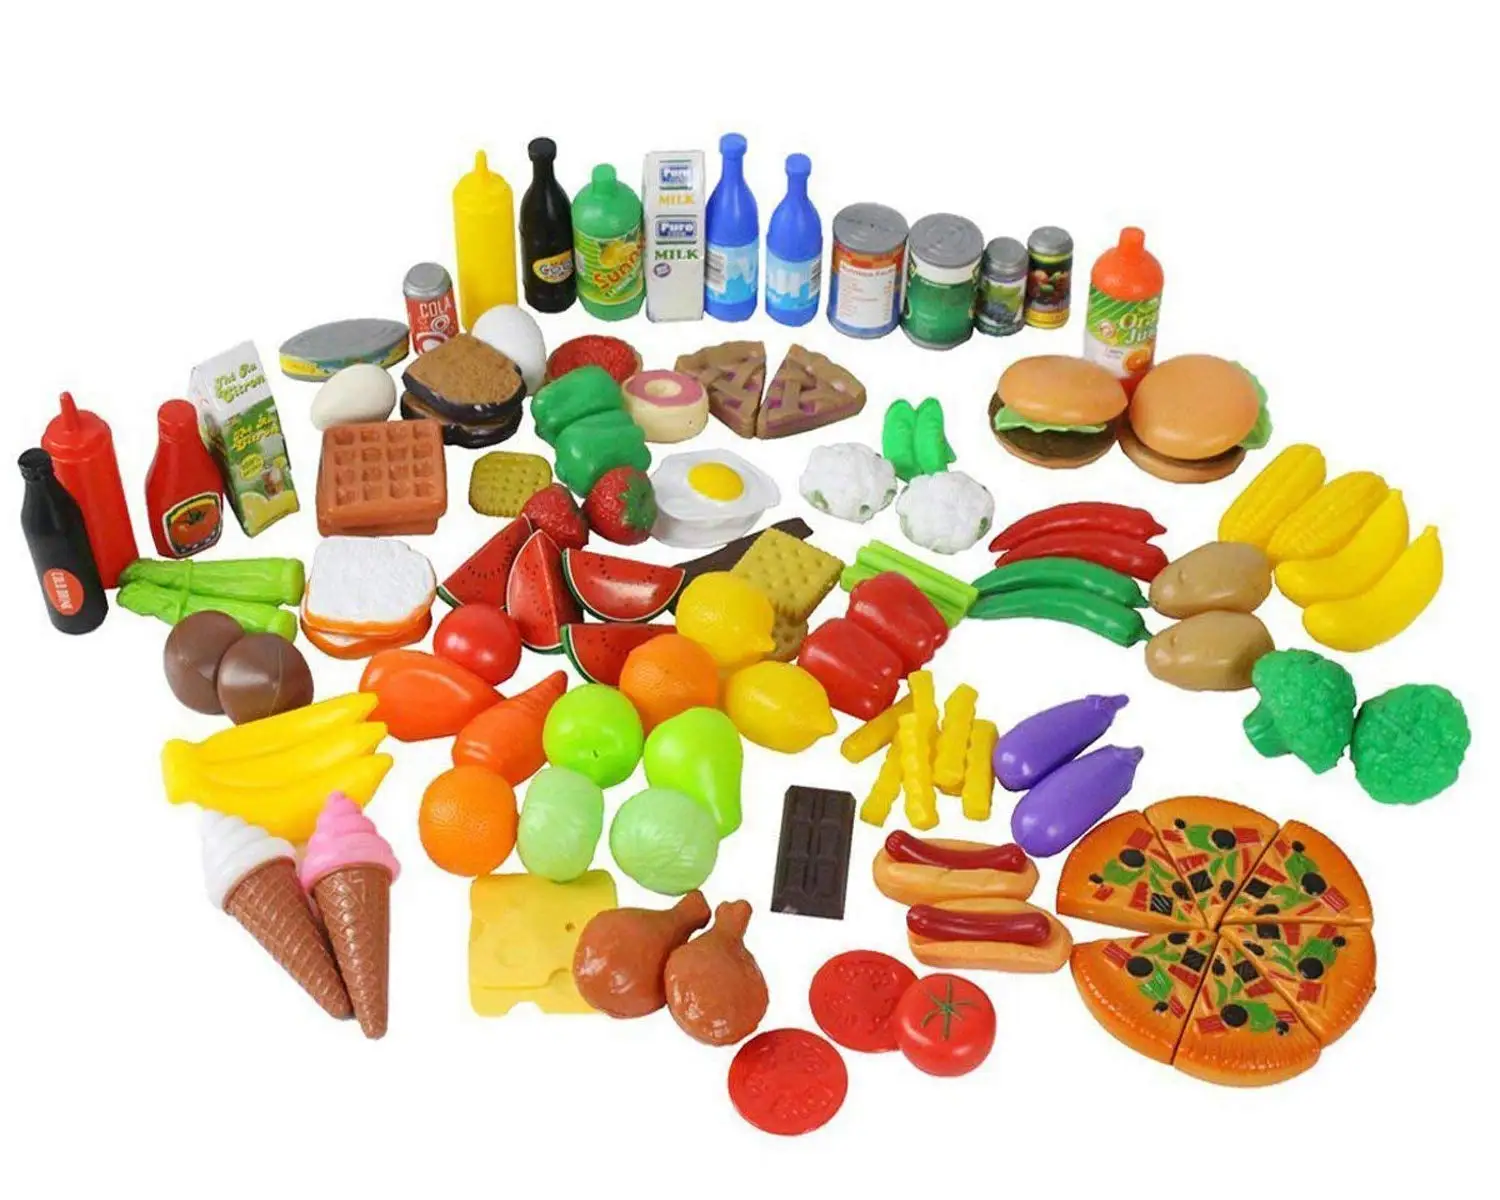 children's toy food set